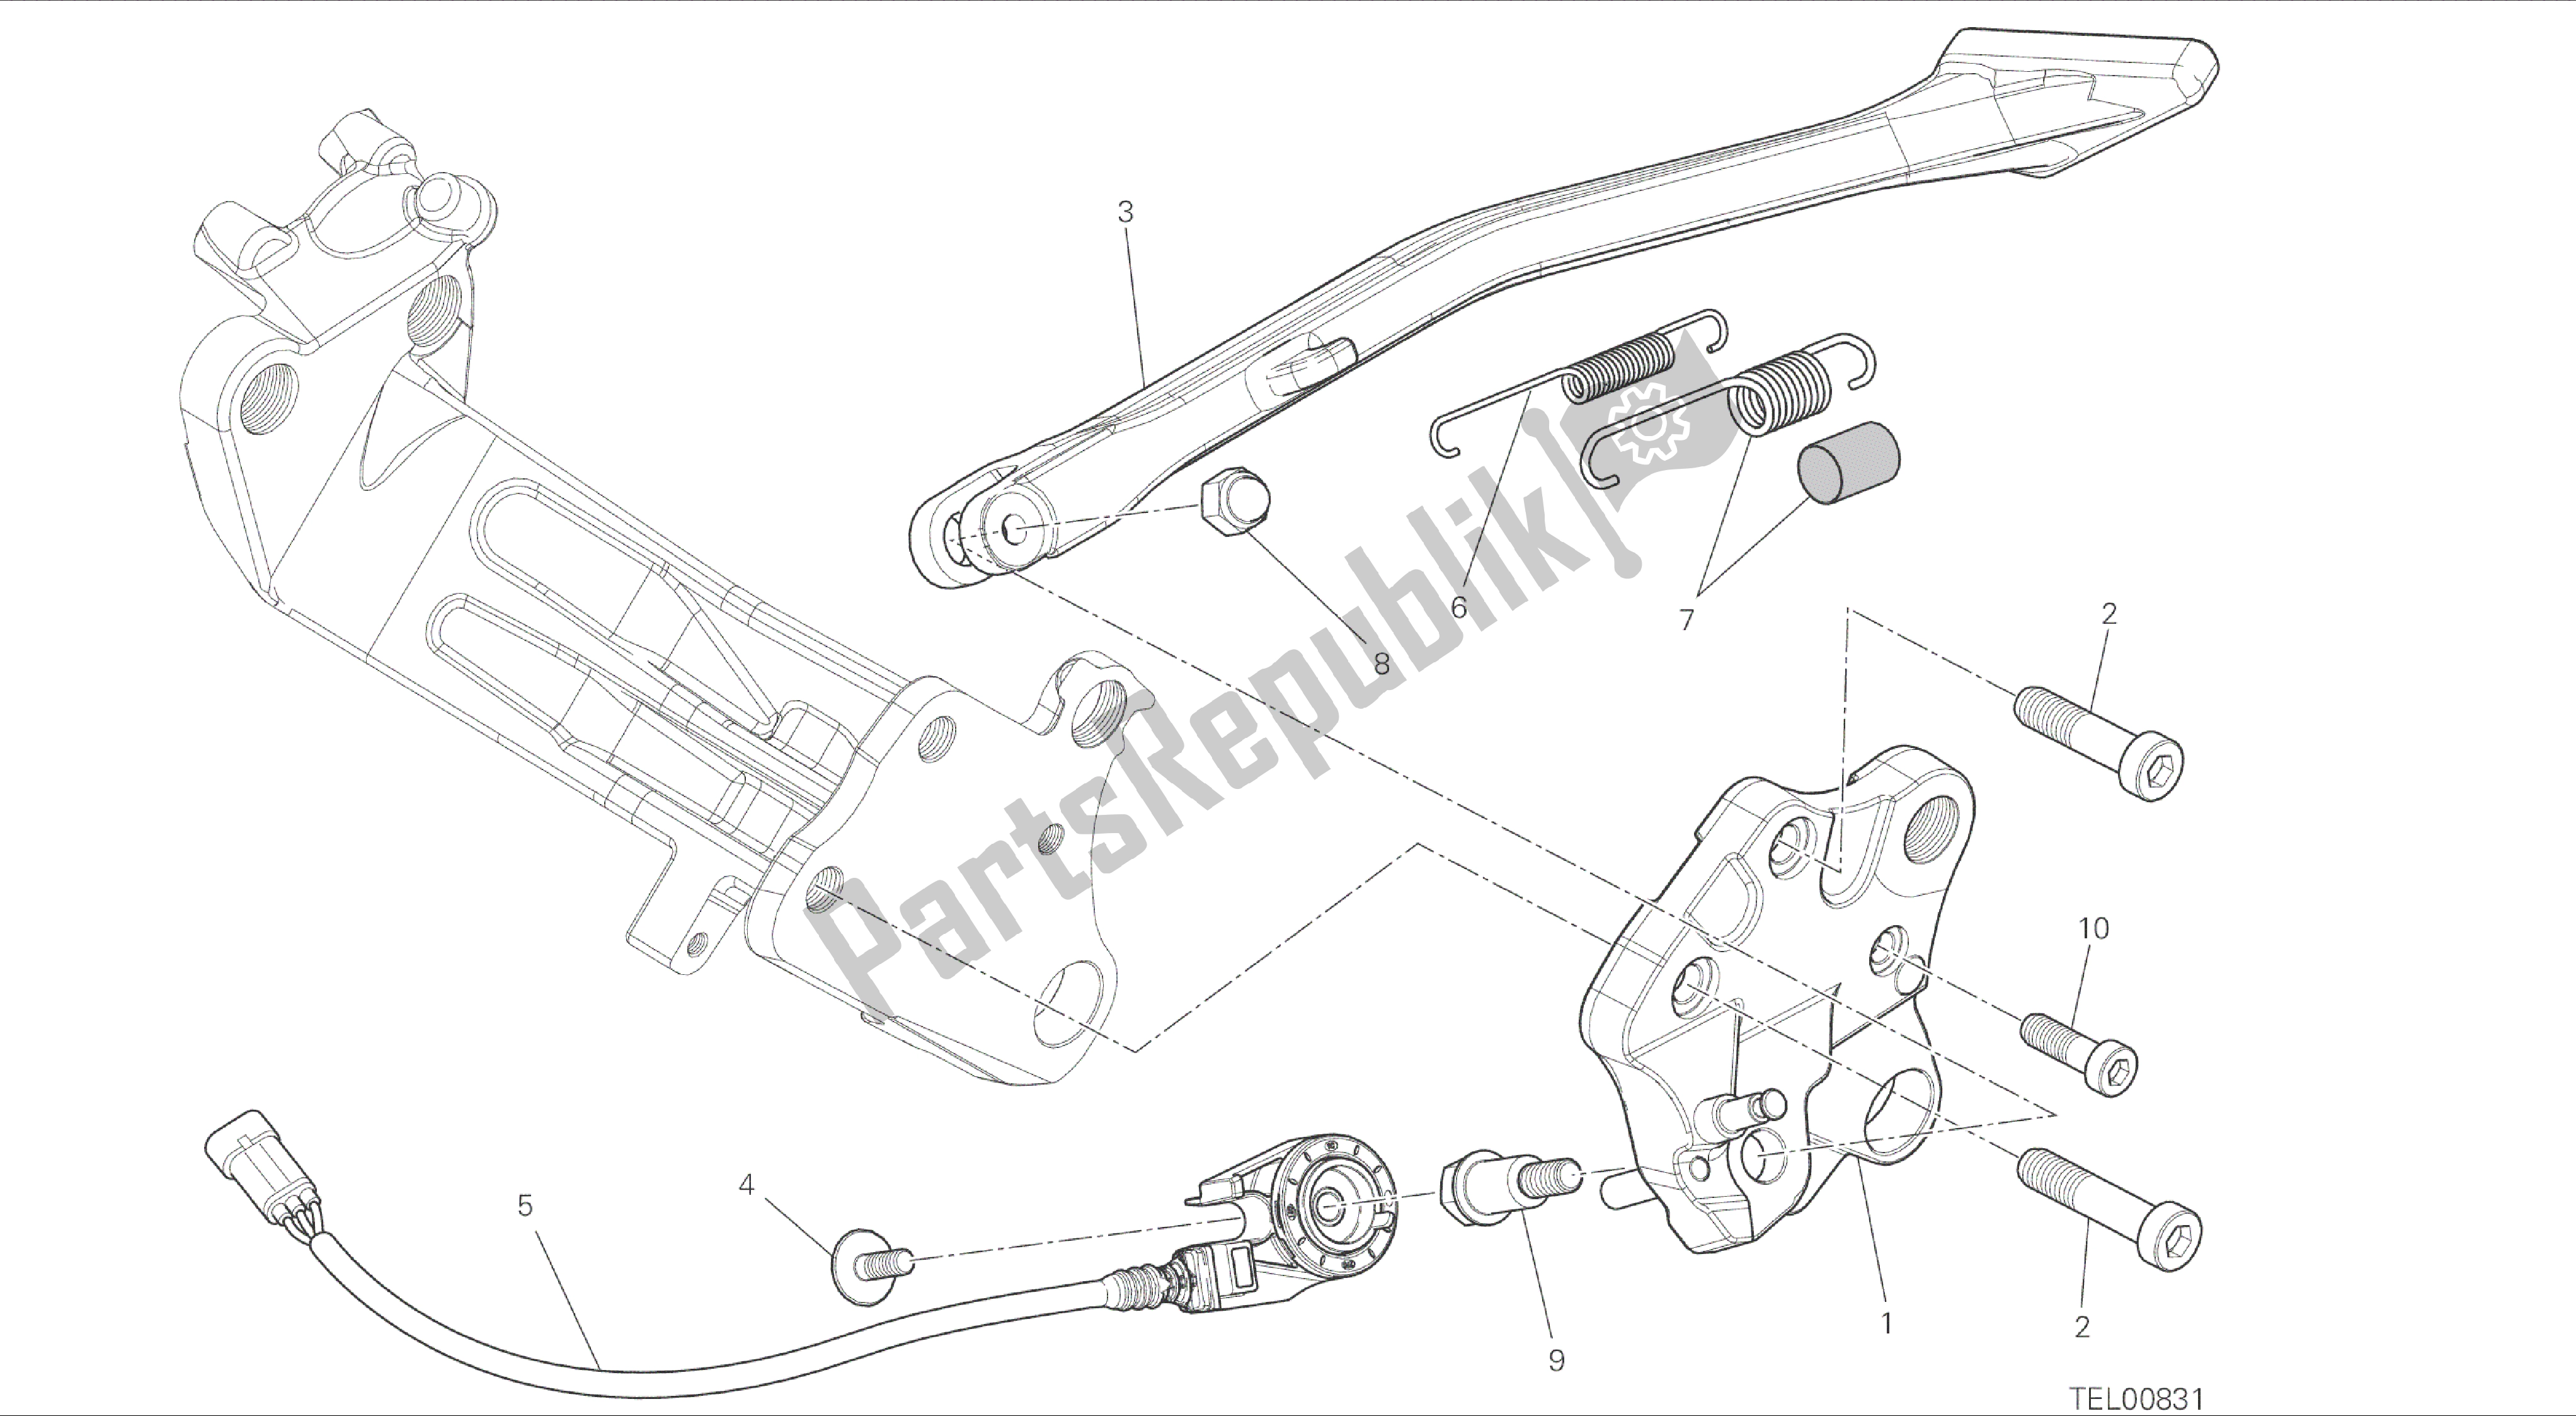 Todas las partes para Dibujo 22a - Bastidor De Grupo De Soporte Lateral [mod: Dvlc] de Ducati Diavel Carbon 1200 2016